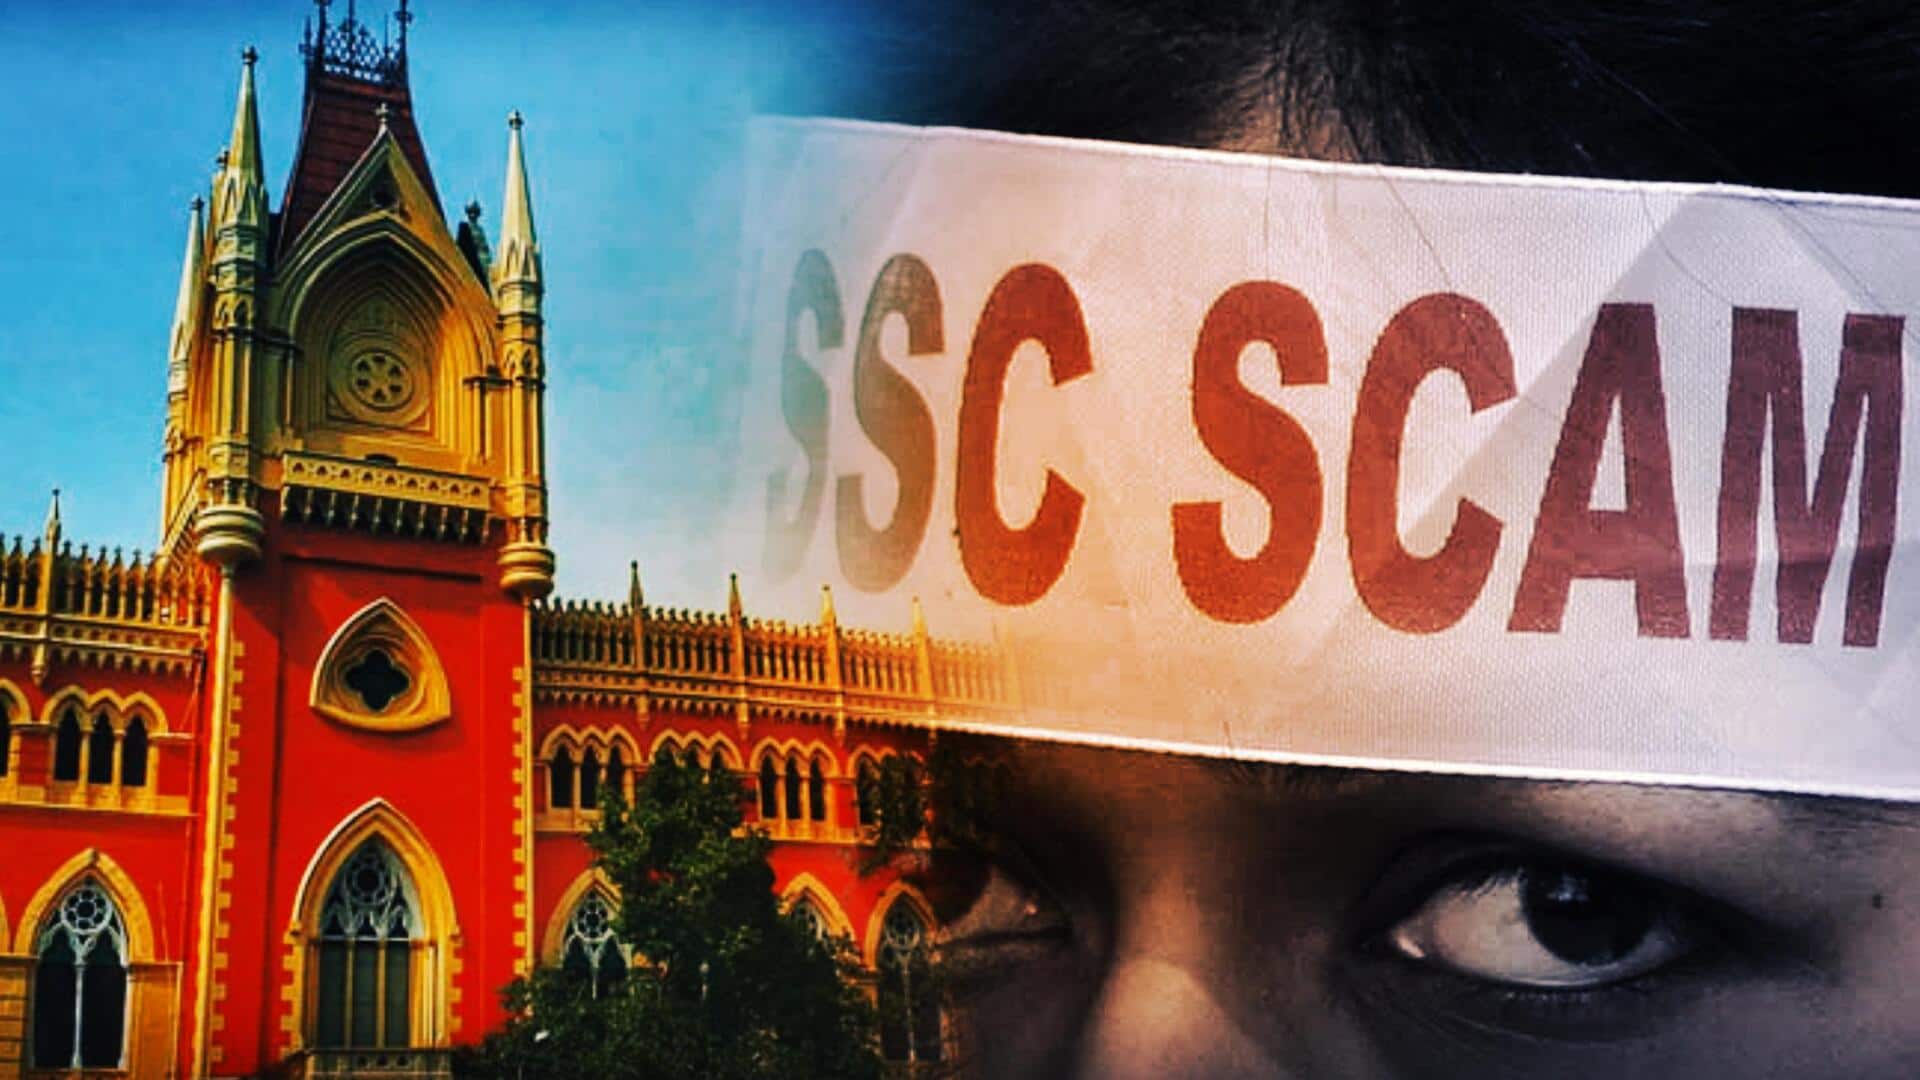 Bengal SSC scam: Calcutta HC overturns 2016 teacher recruitment